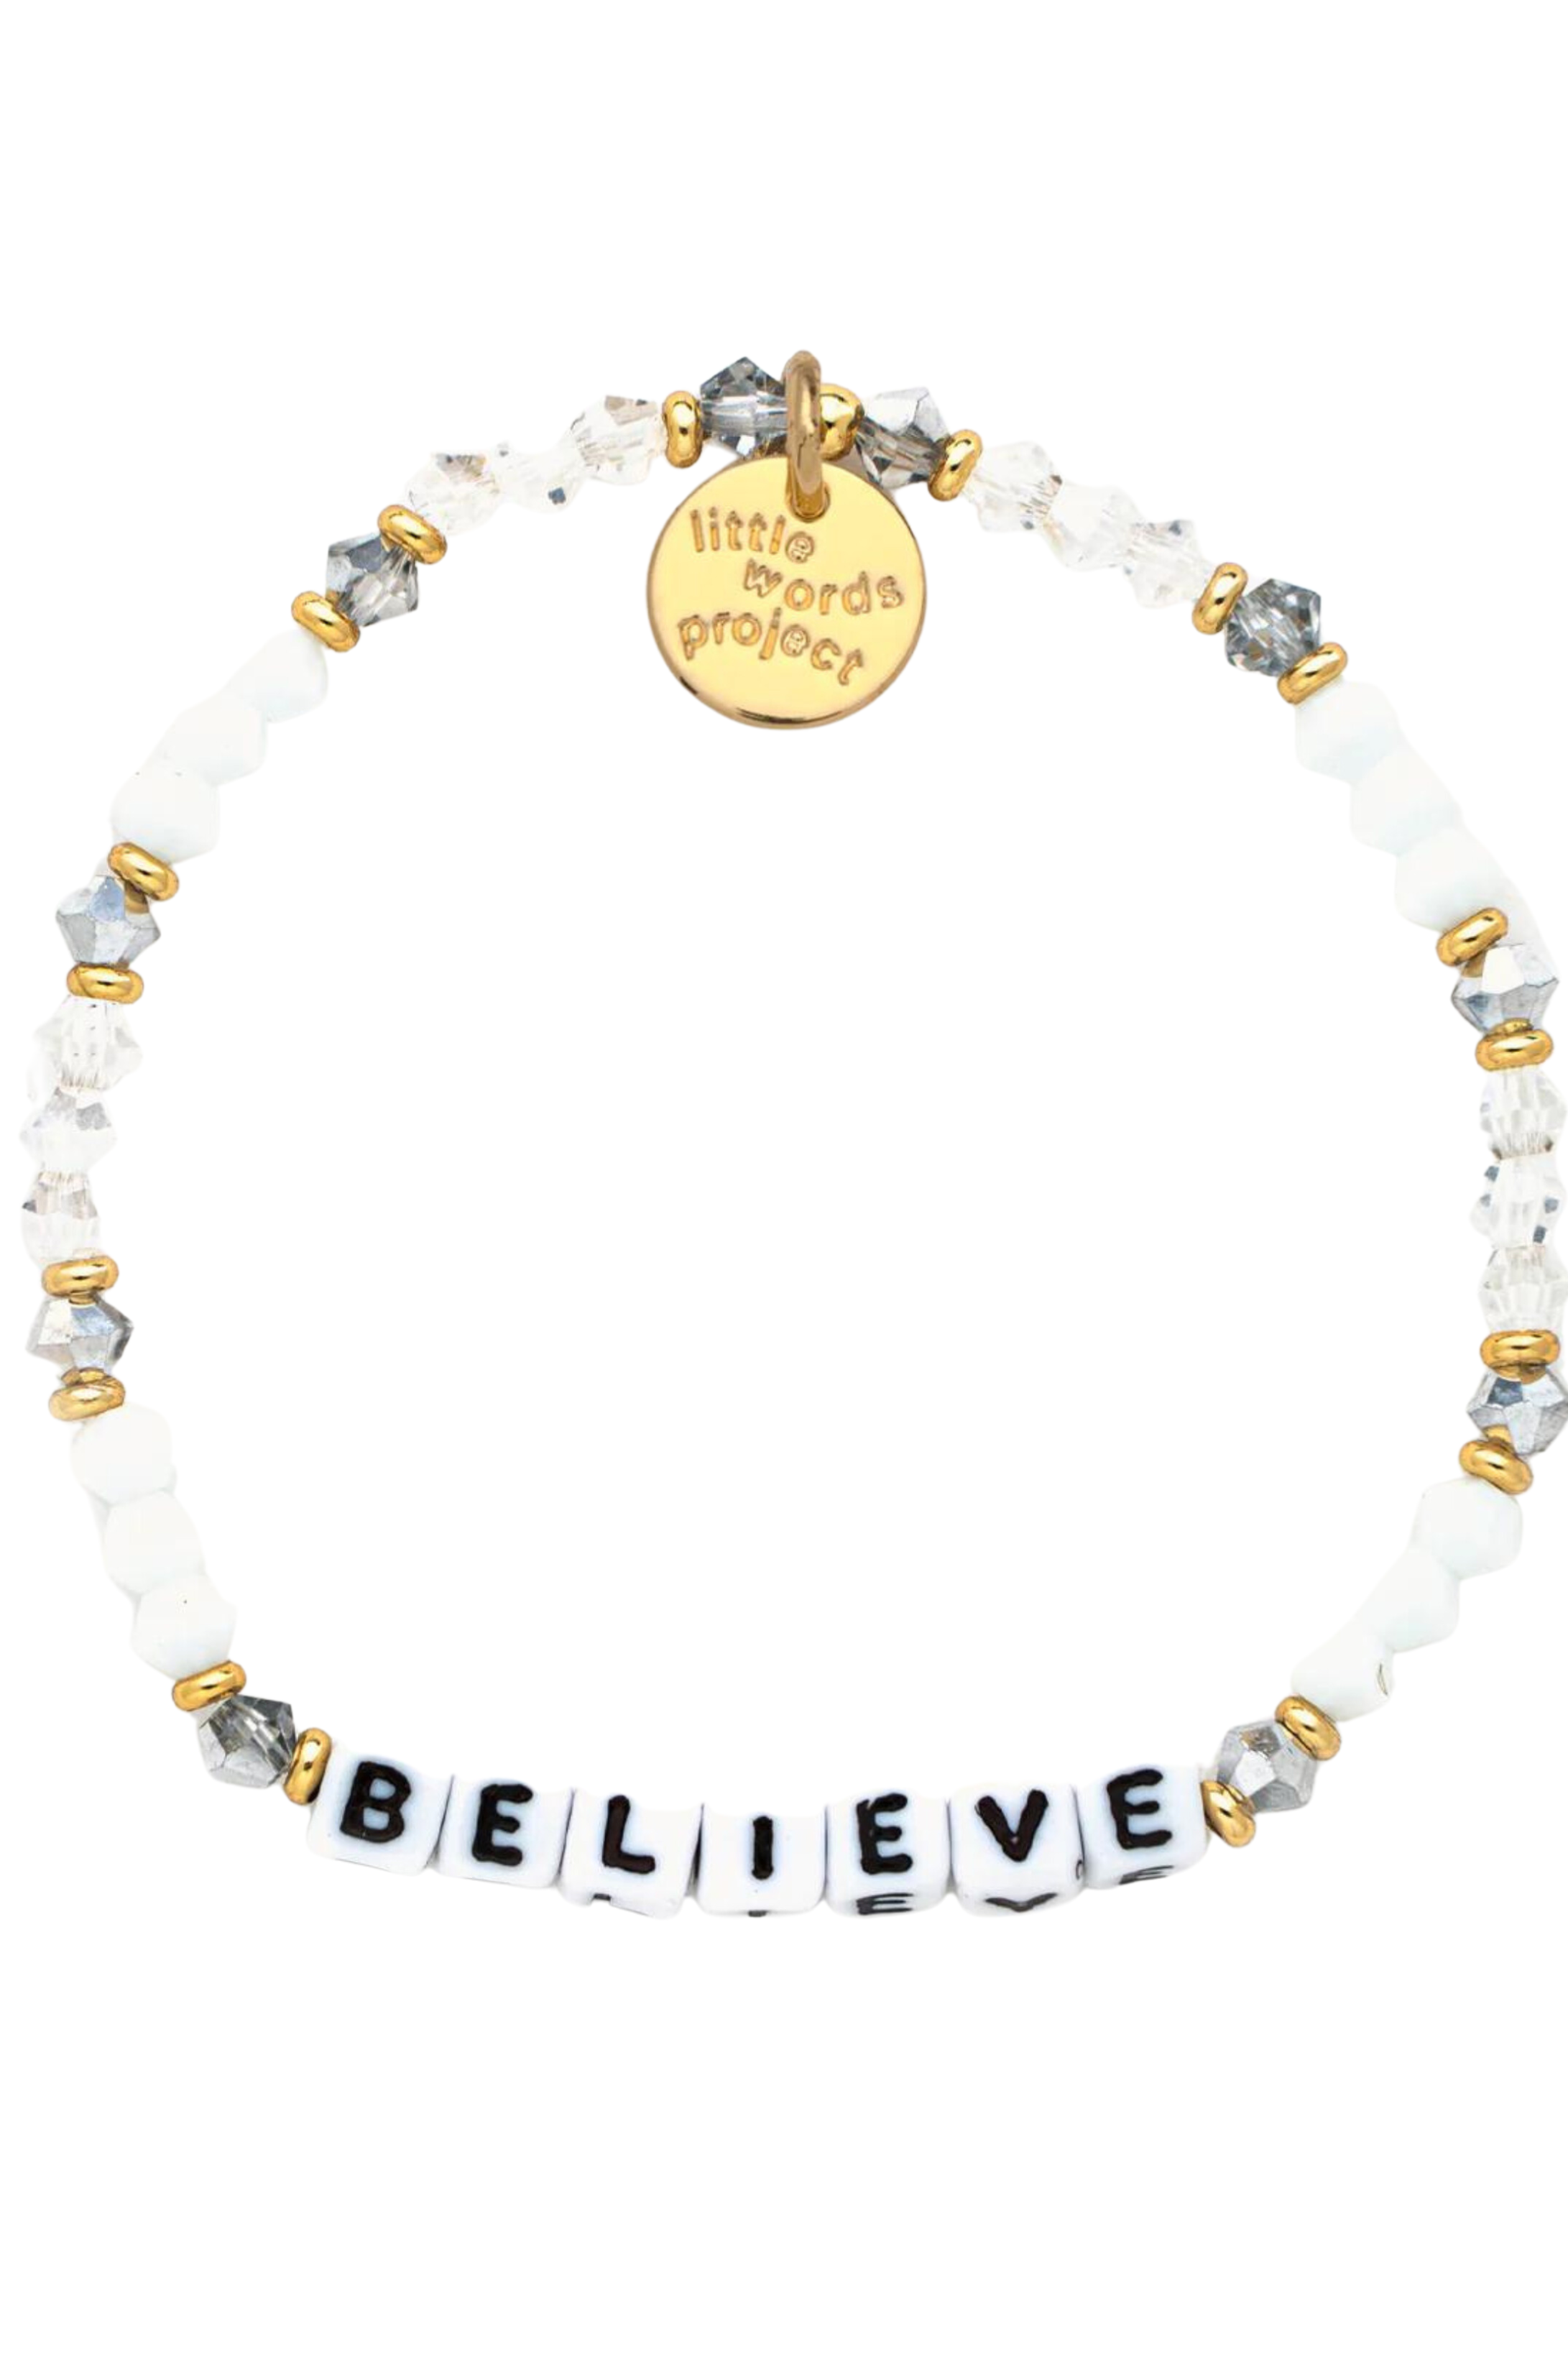 Believe Bracelet- Little Words Project